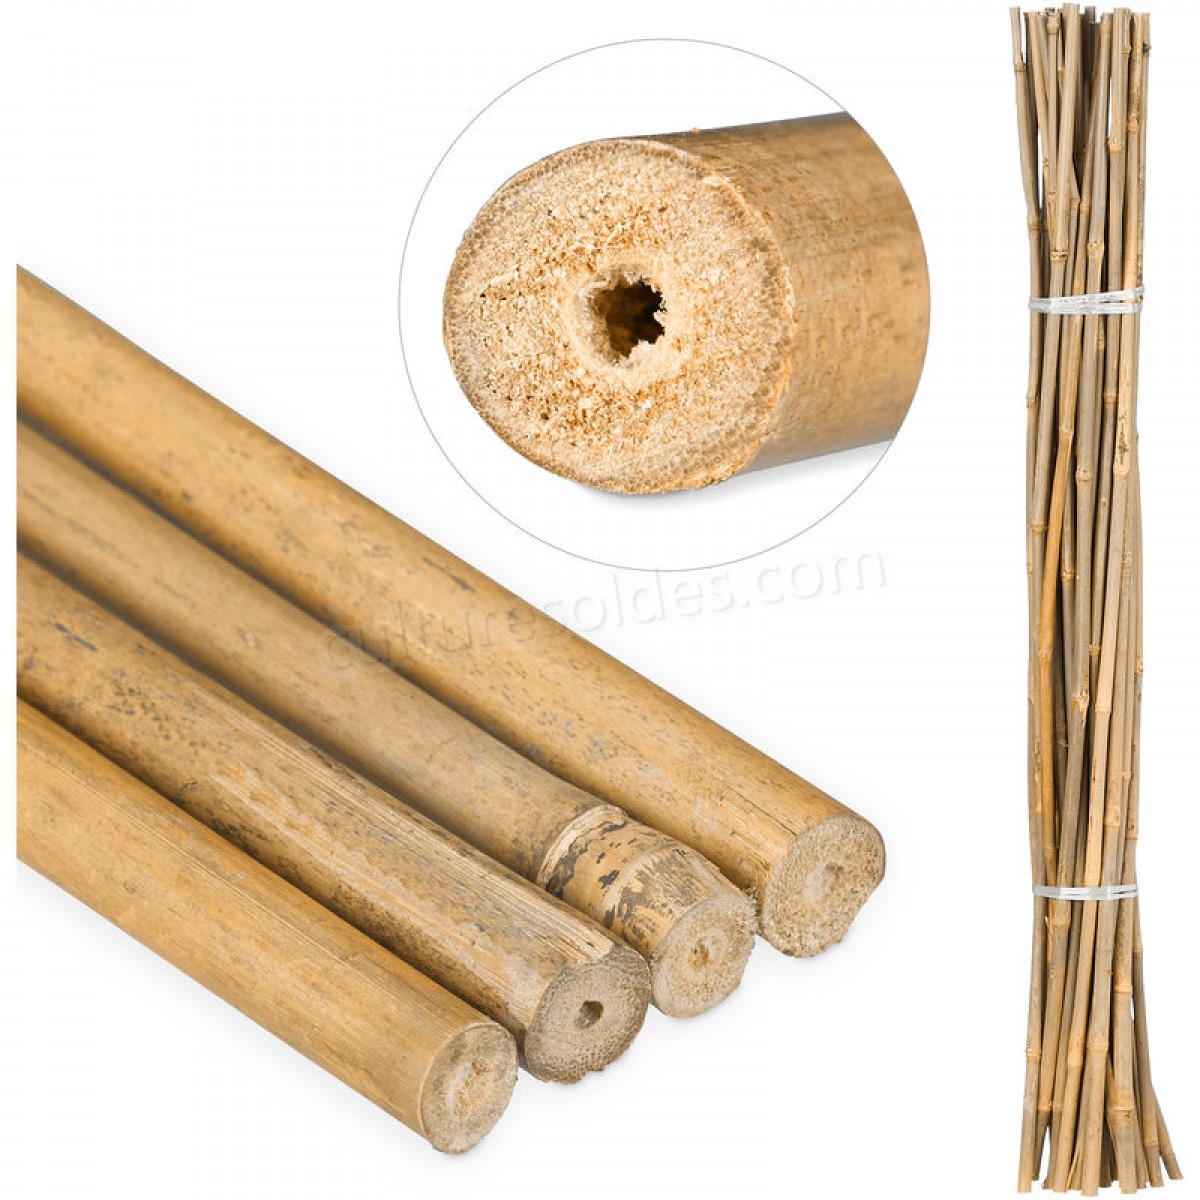  Tiges en bambou 105 cm, en bambou naturel, bâtons en bambou comme tuteur ou décoration, pour bricoler, naturel soldes en ligne -  Tiges en bambou 105 cm, en bambou naturel, bâtons en bambou comme tuteur ou décoration, pour bricoler, naturel soldes en ligne